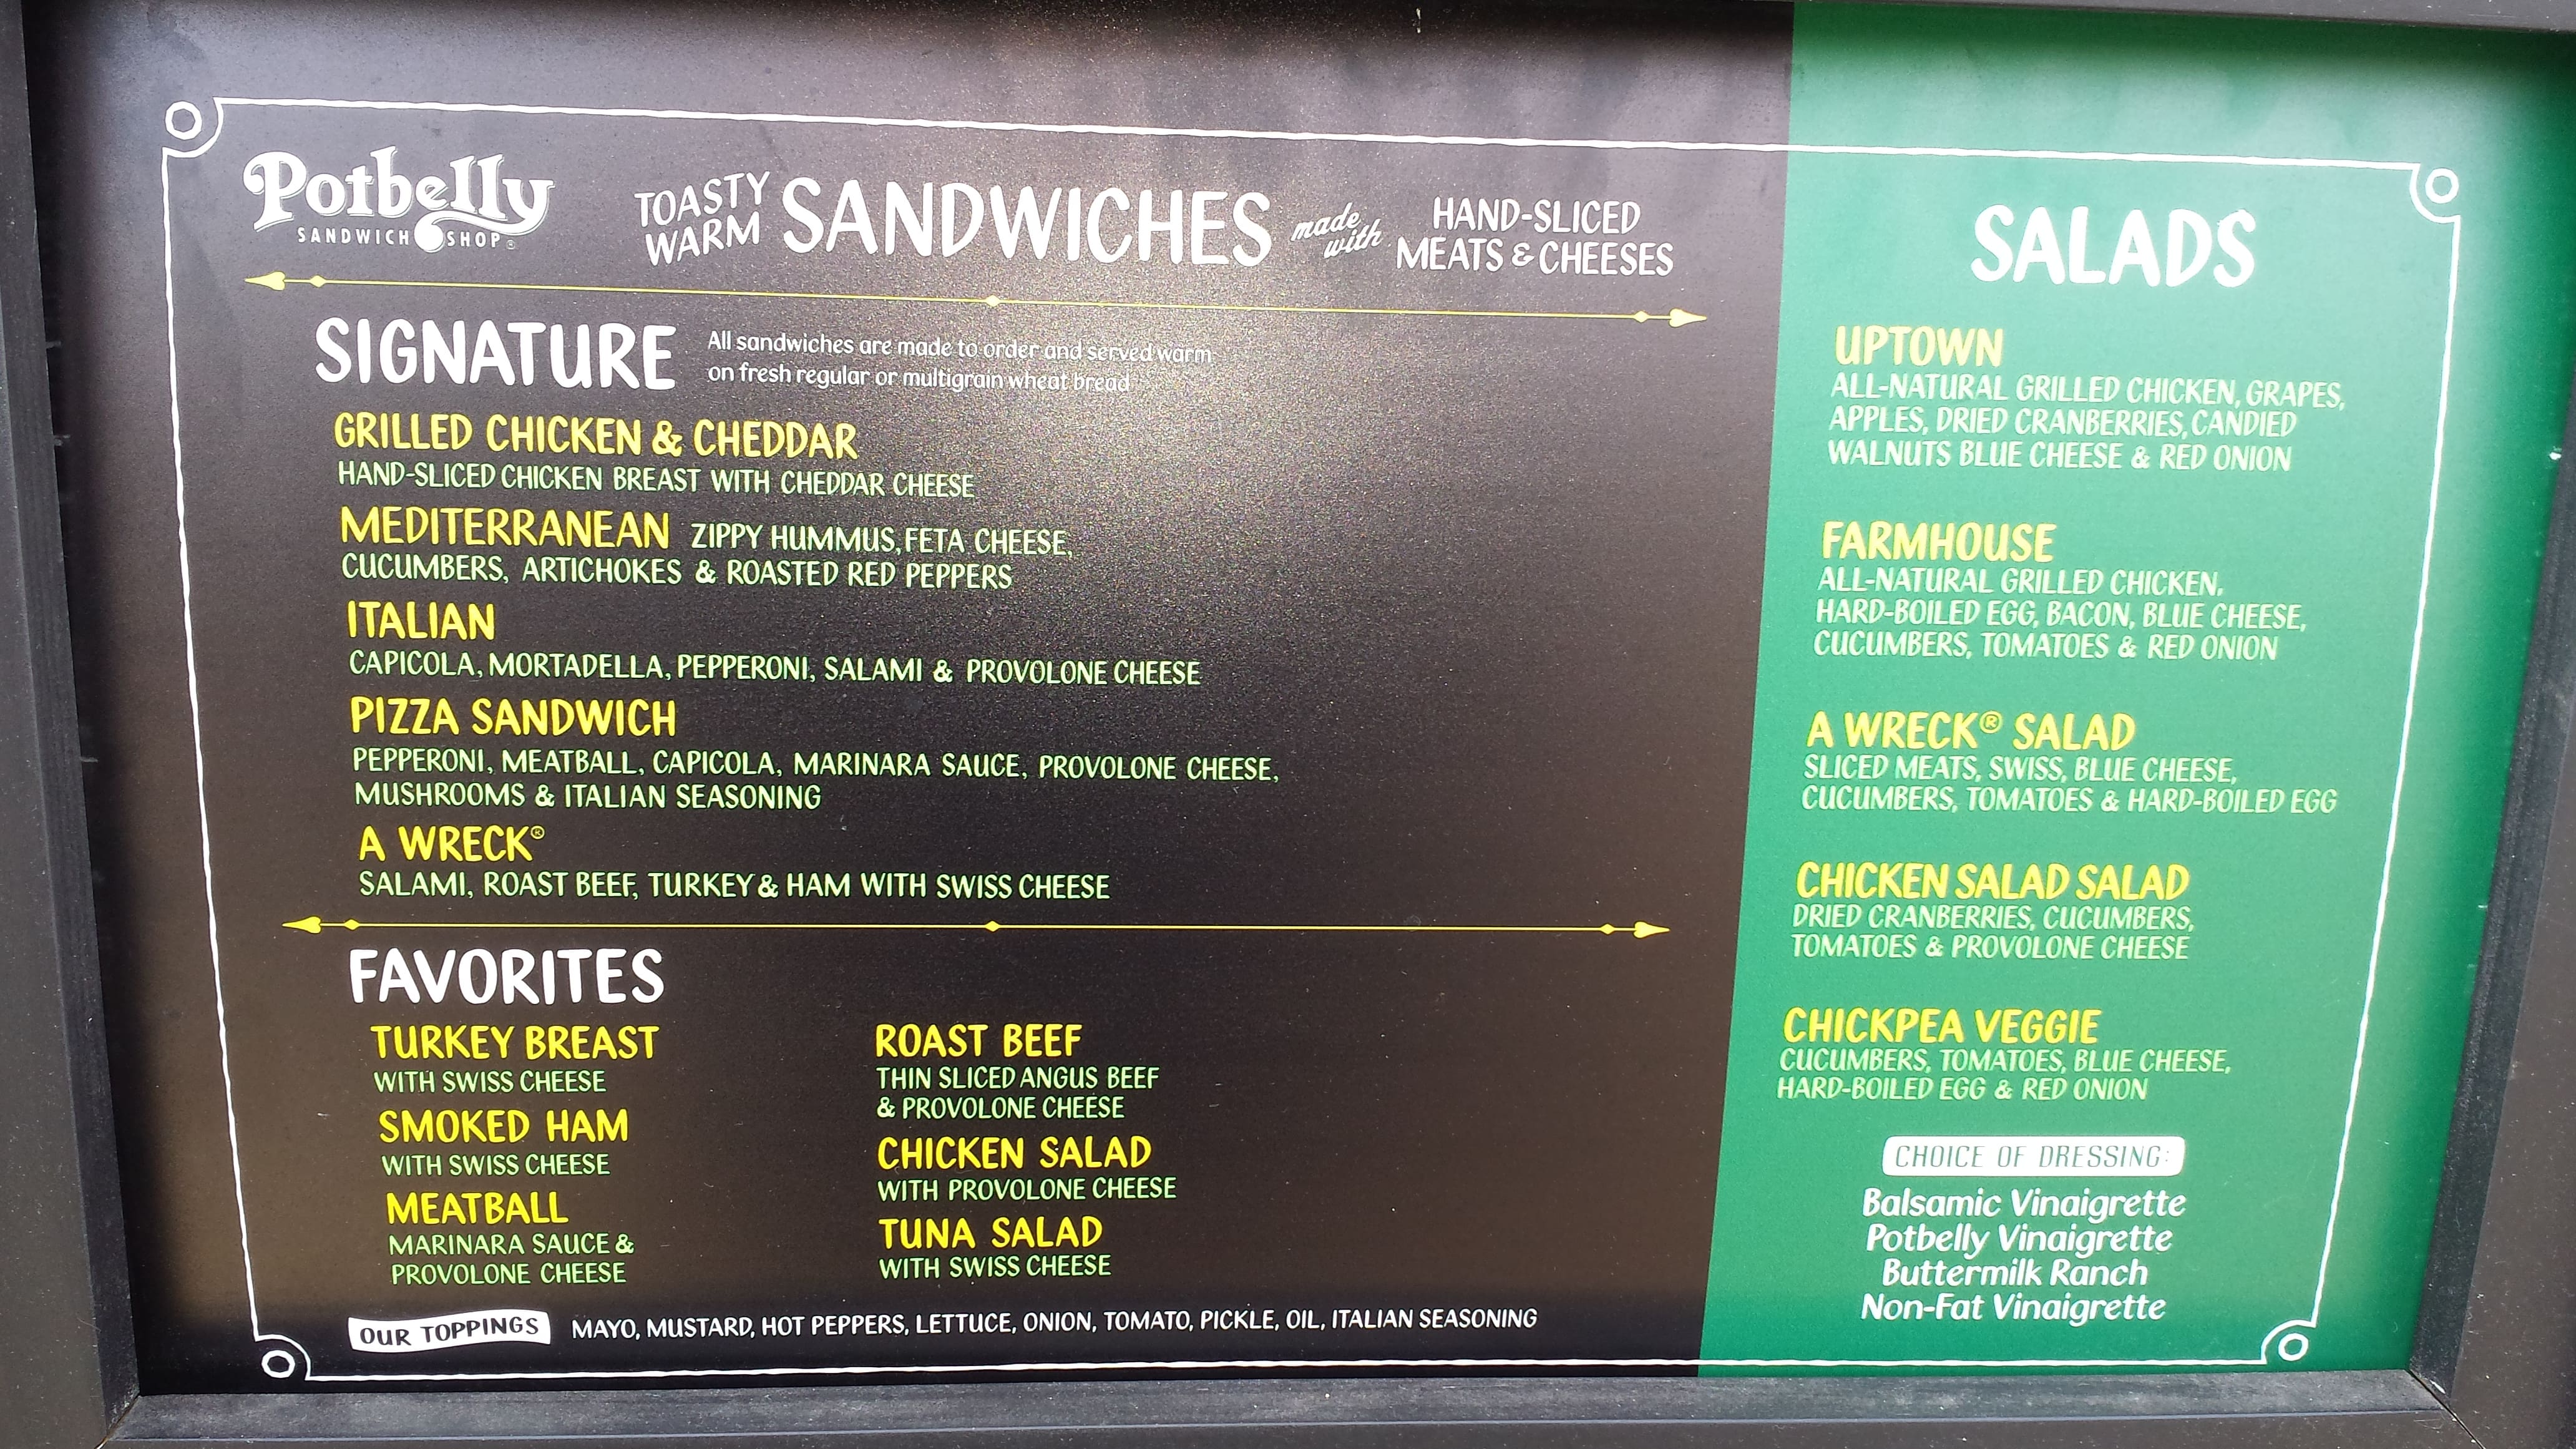 Potbelly Sandwich Shop menu, Menu restauracji Potbelly Sandwich Shop